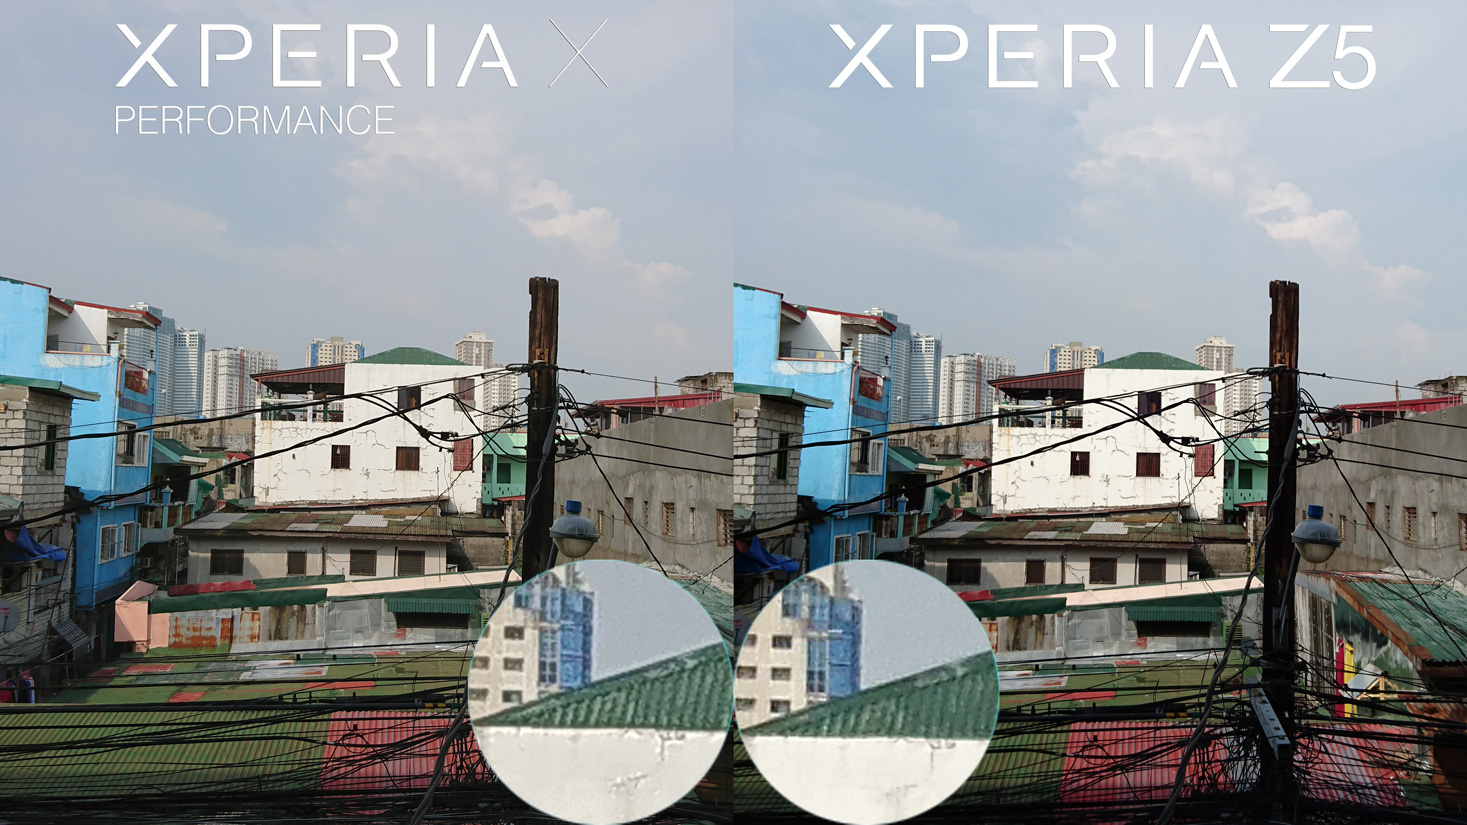 Sony Xperia X Performance vs Xperia Z5 camera review selfie 1